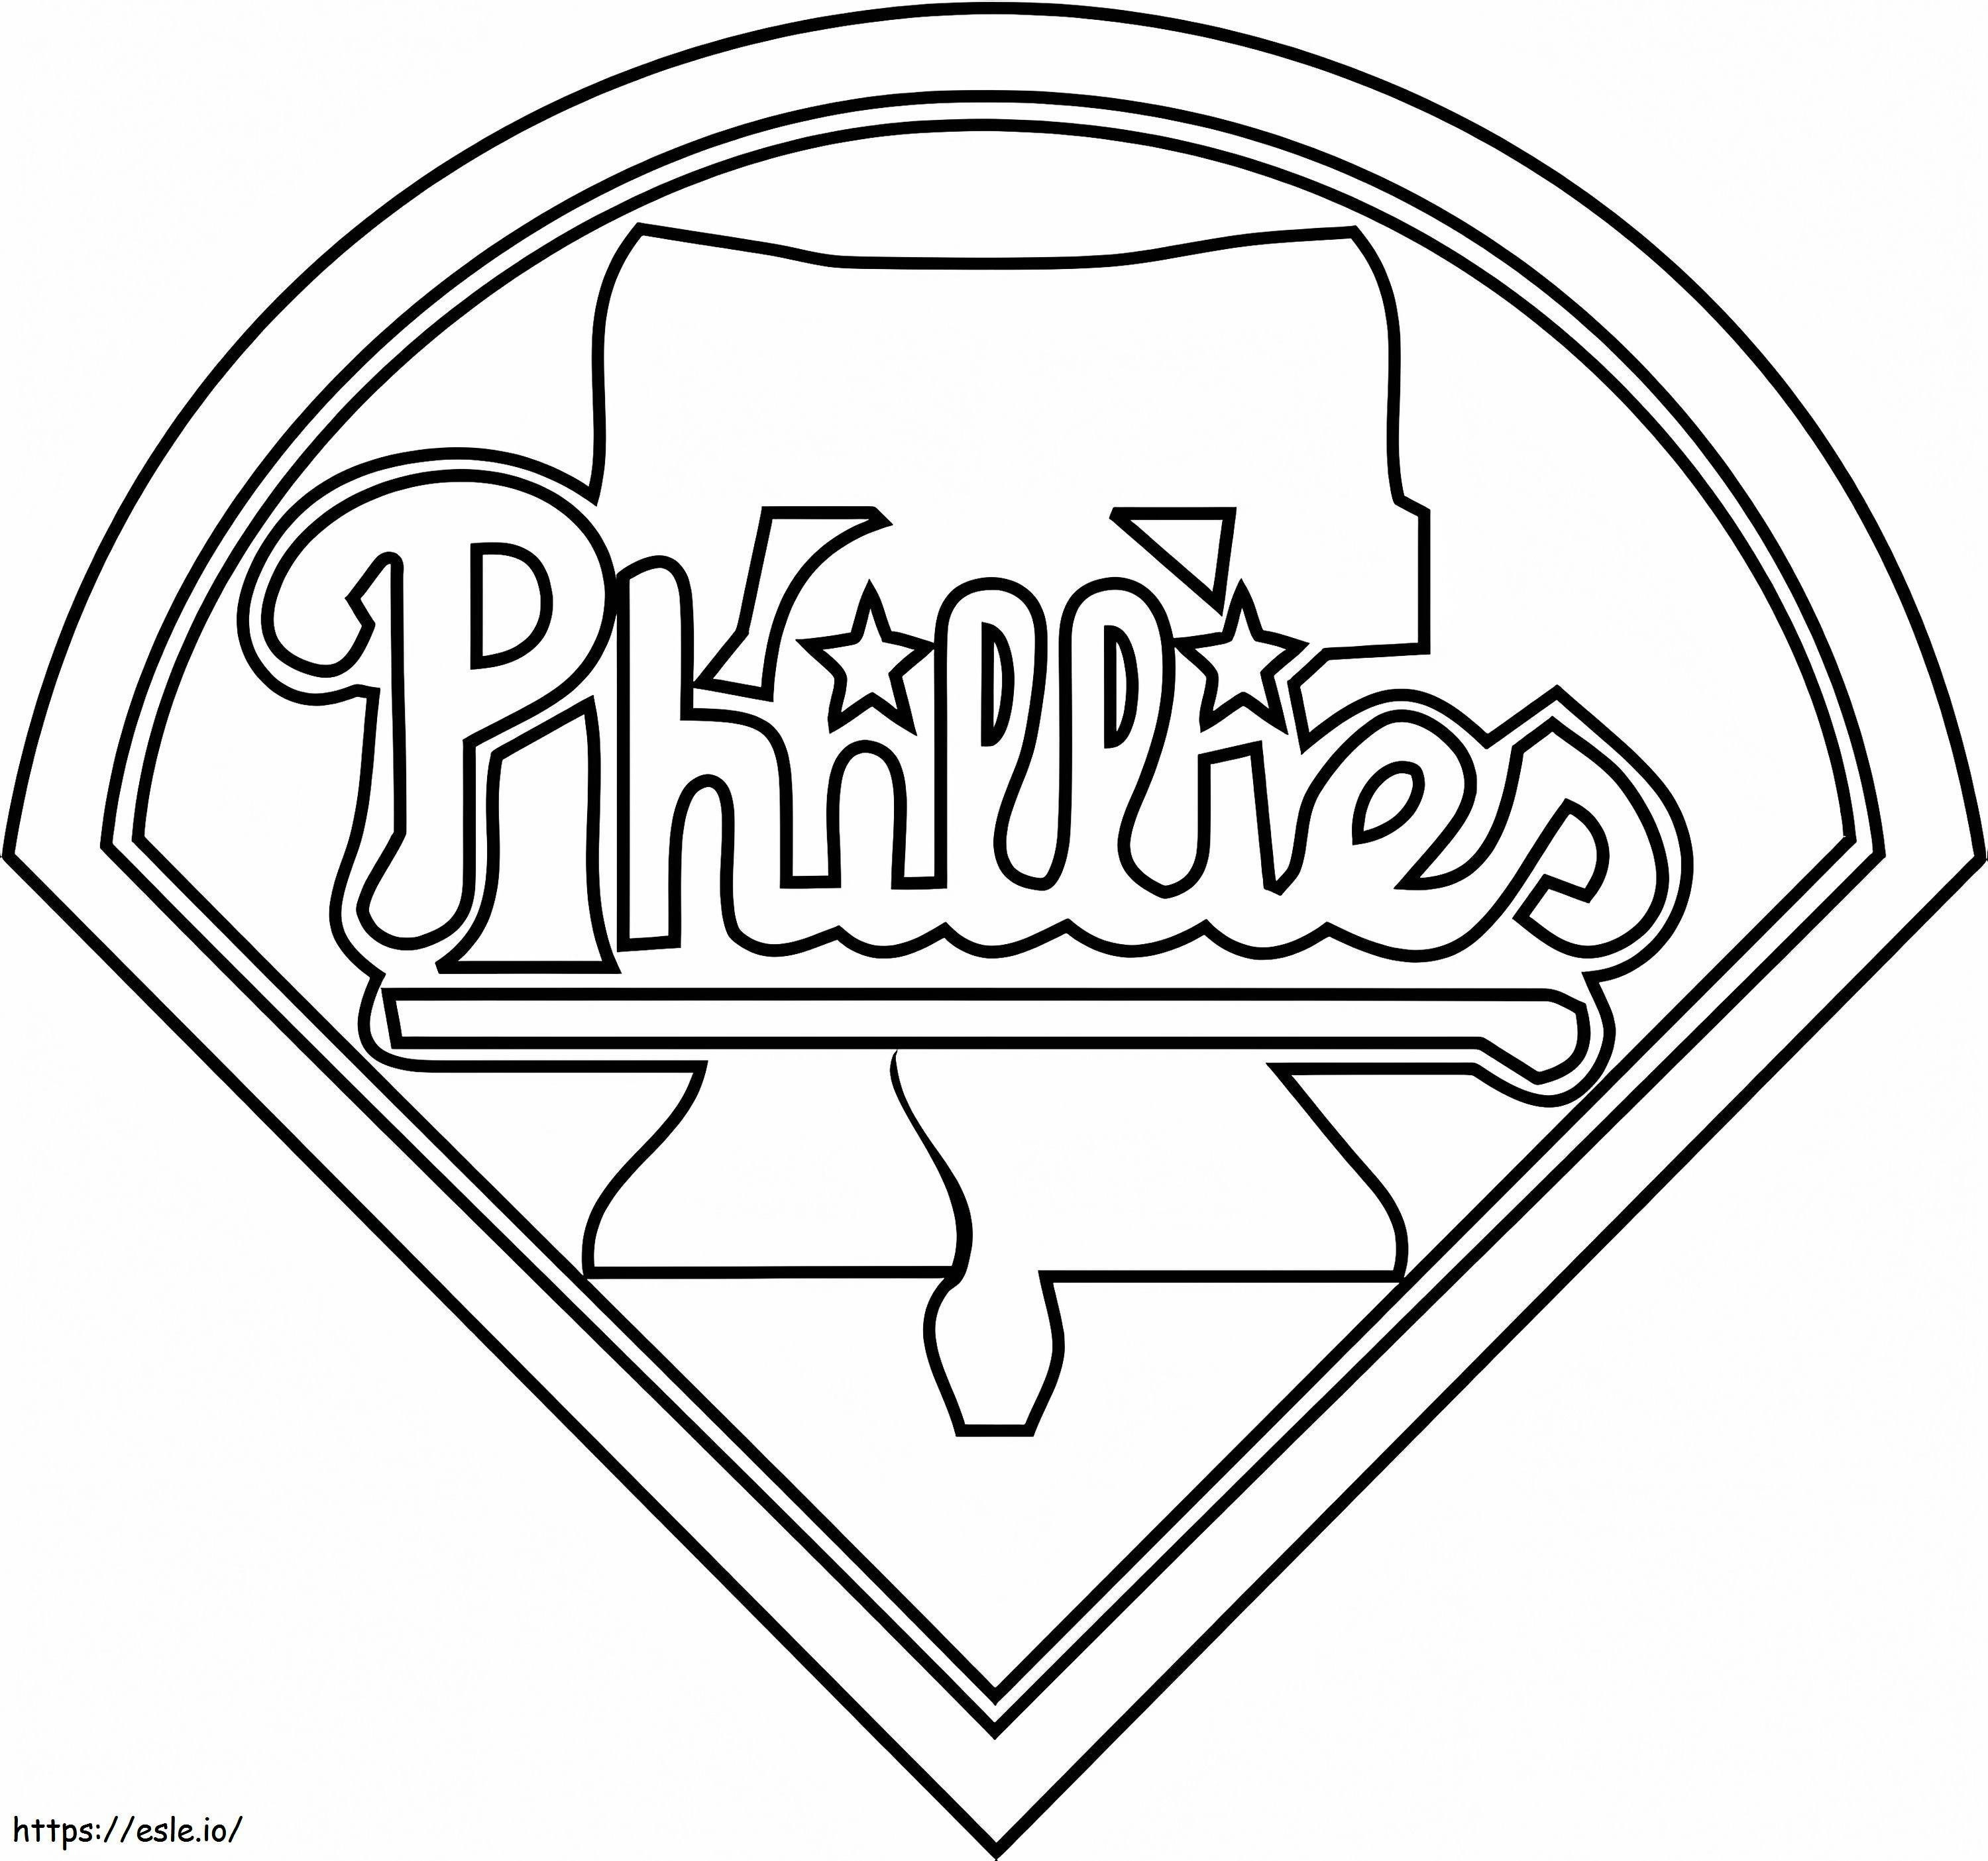 Philadelphia Phillies-logo kleurplaat kleurplaat